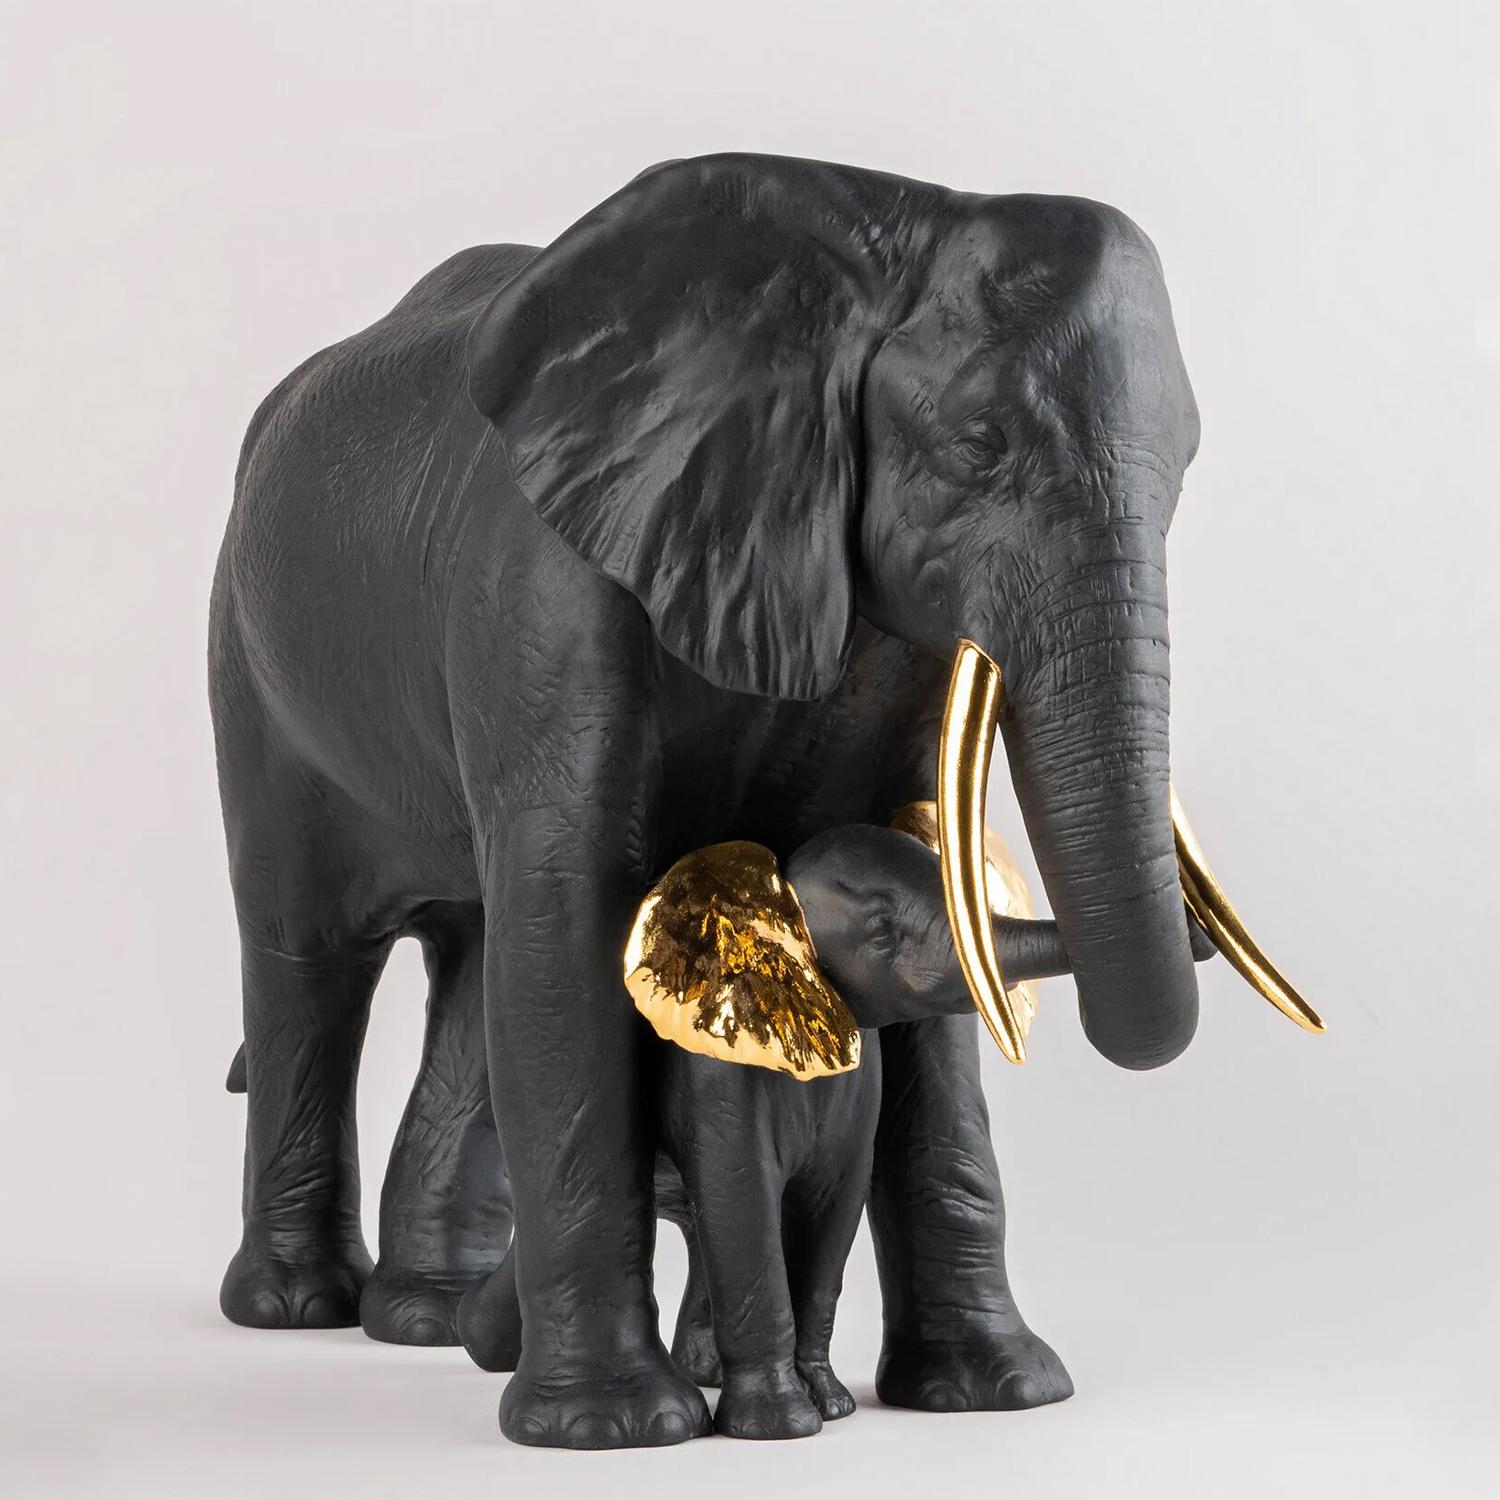 Sculpture Eléphants Noir avec toute la structure en 
porcelaine en noir mat et en or brillant.